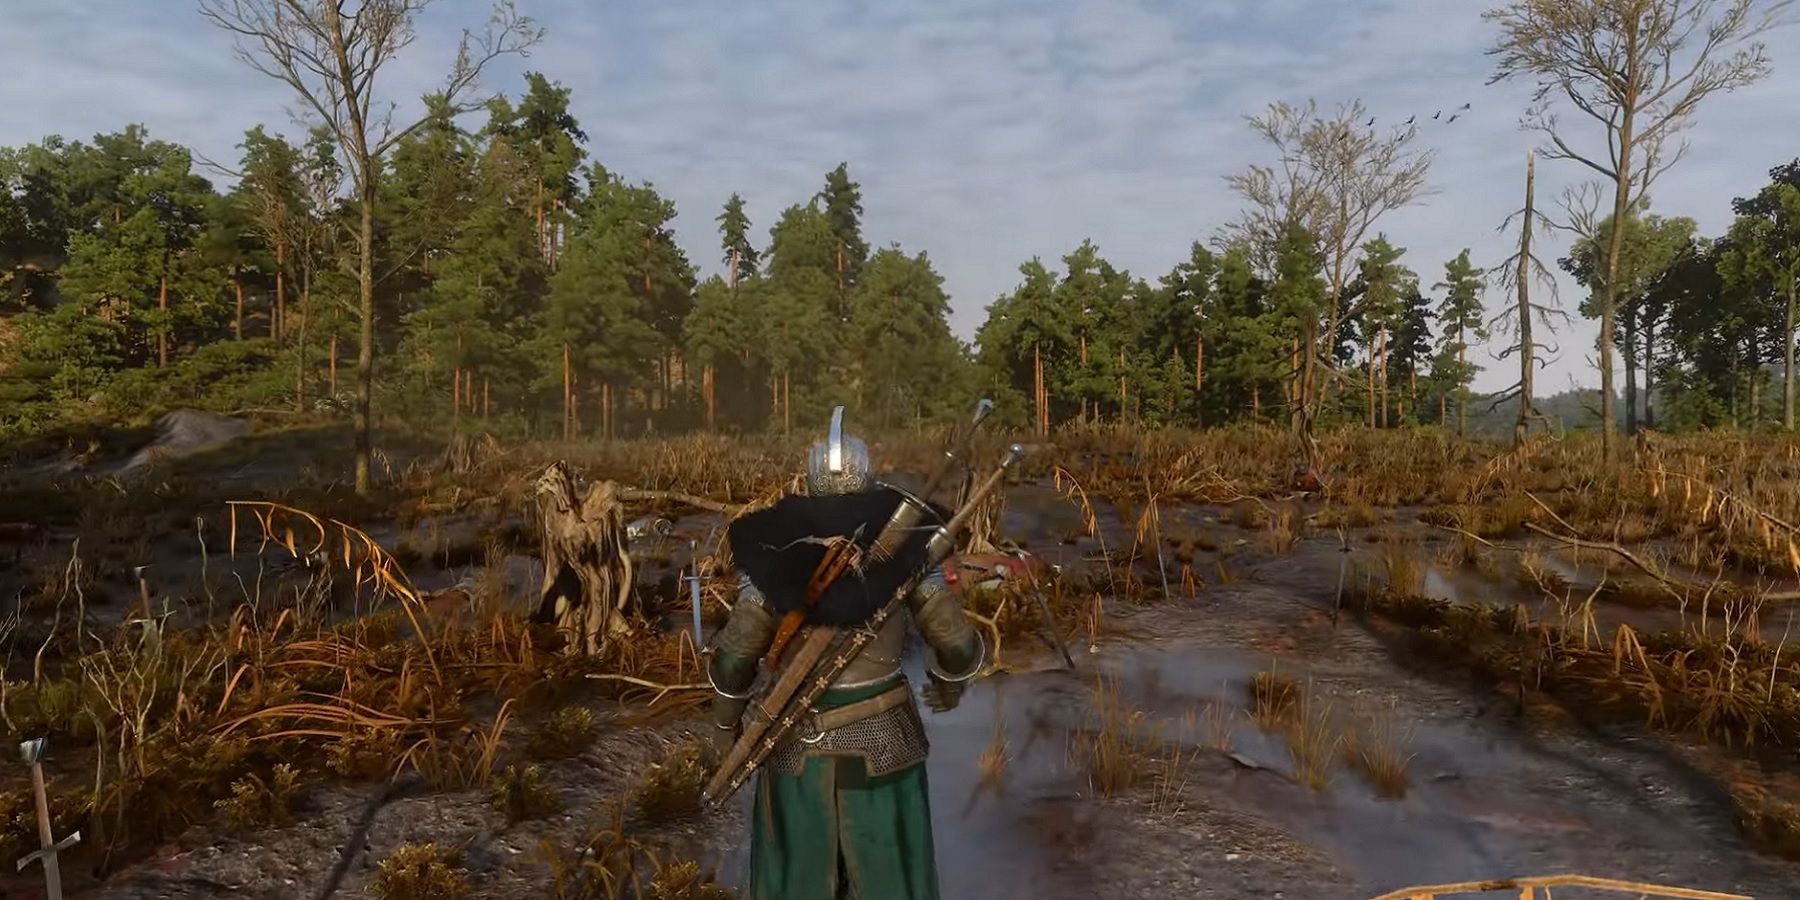 Скриншот из The Witcher 3, показывающий, как игрок бродит по болотистой местности.